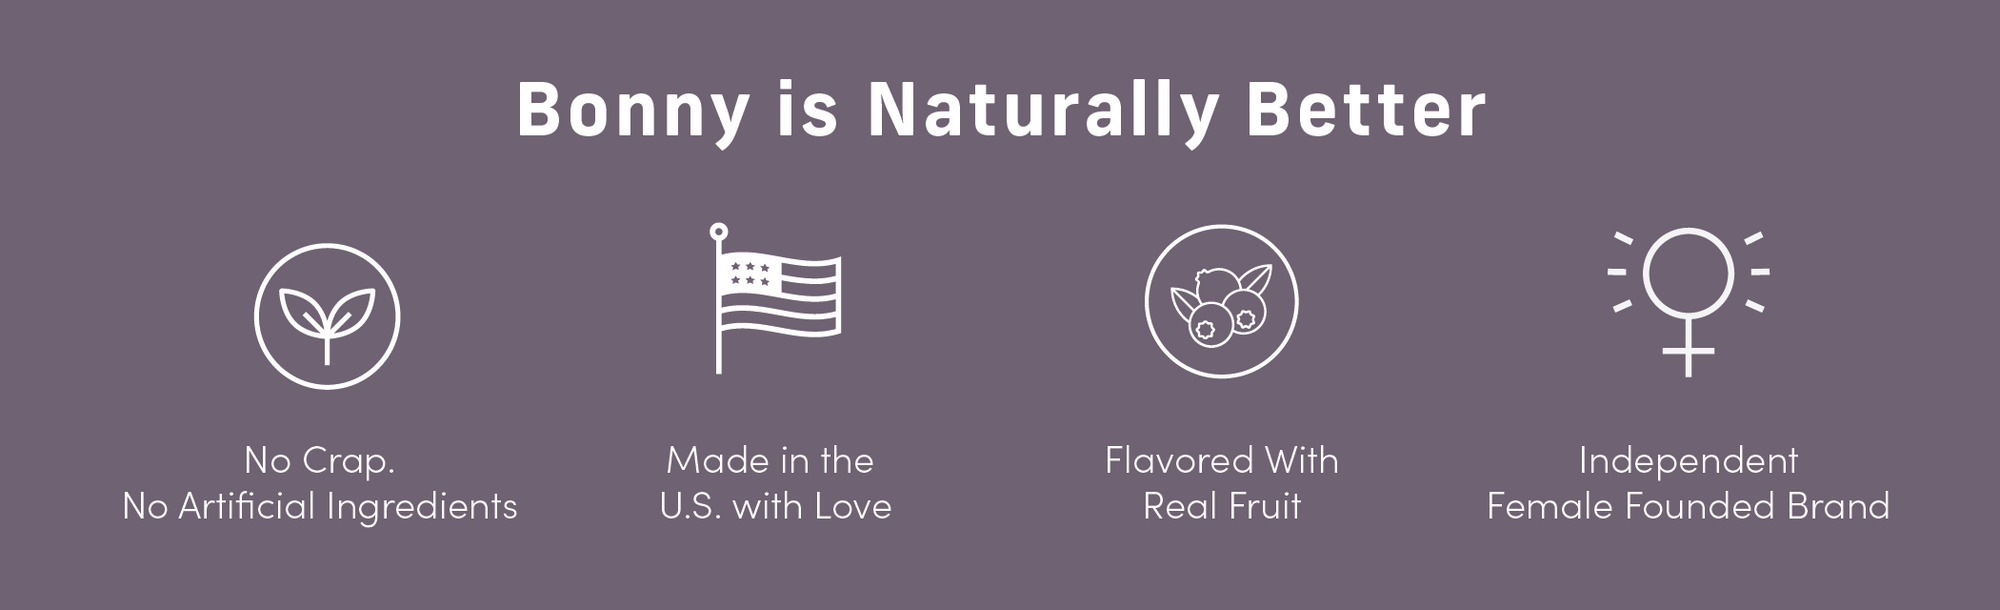 Bonny is a naturally better fiber supplement